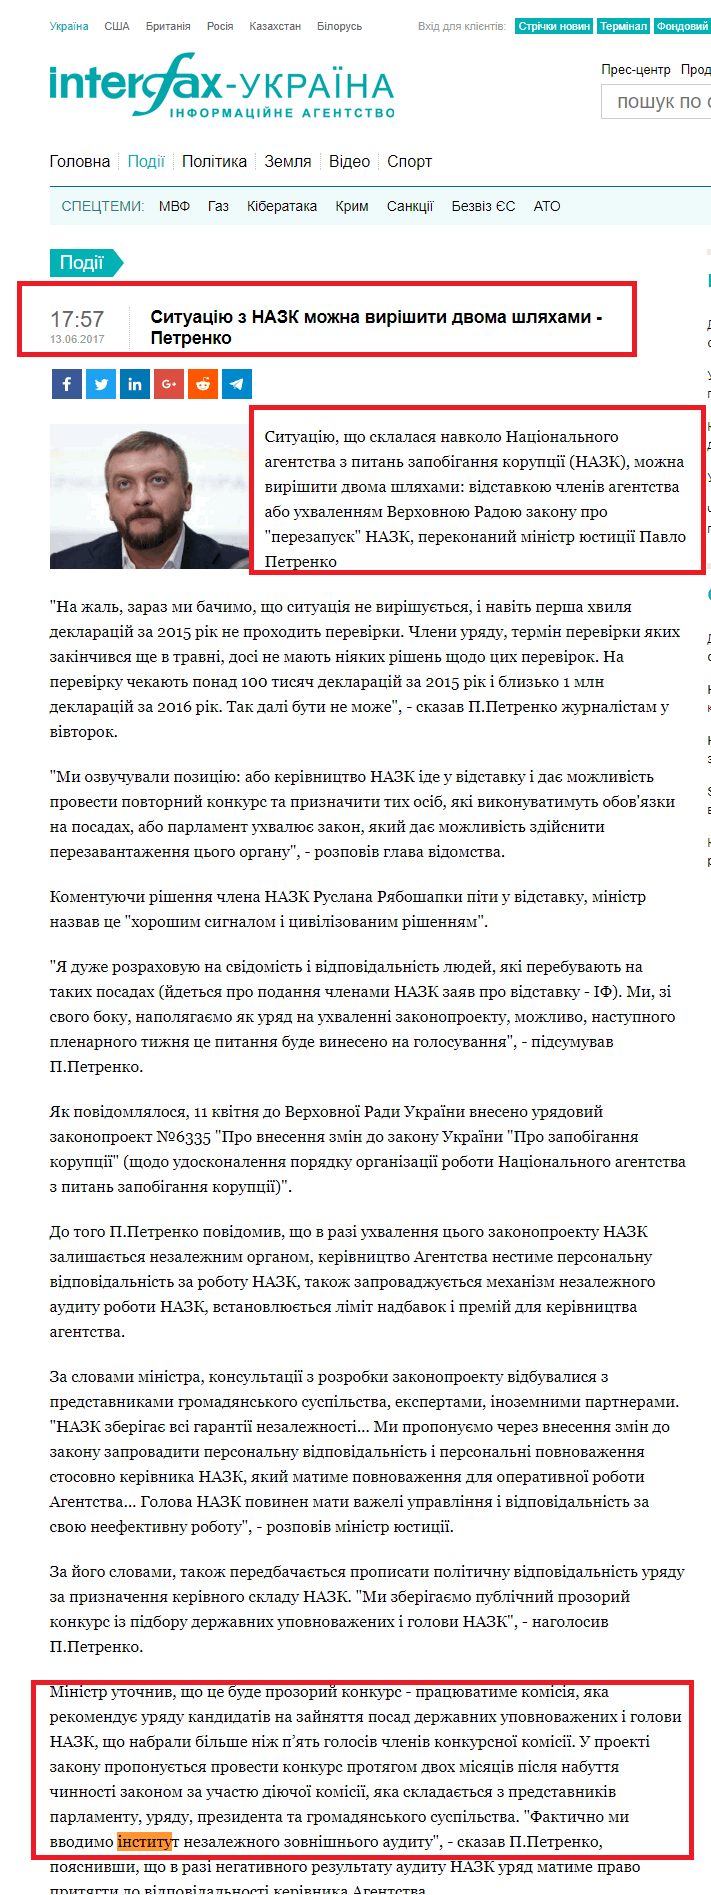 http://ua.interfax.com.ua/news/general/428502.html